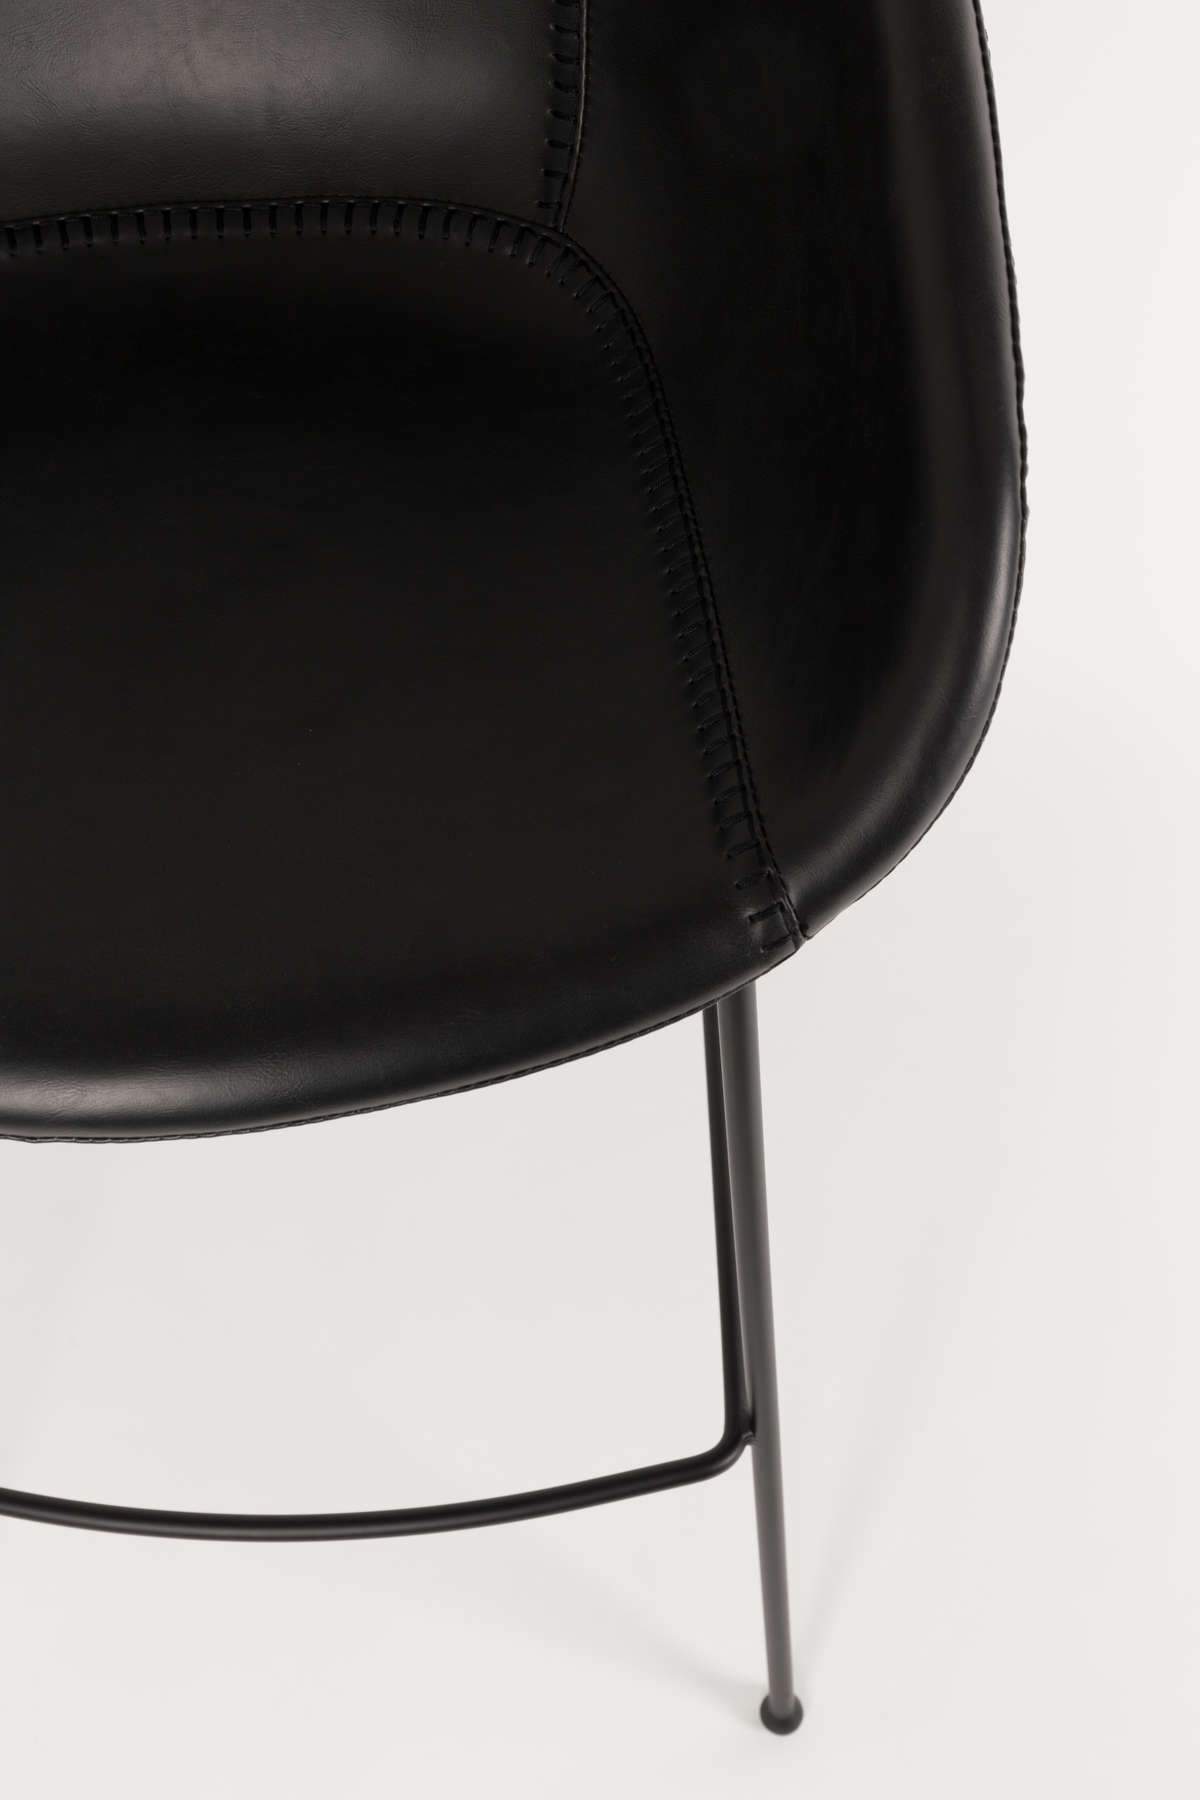 FESTON bar stool black, Zuiver, Eye on Design